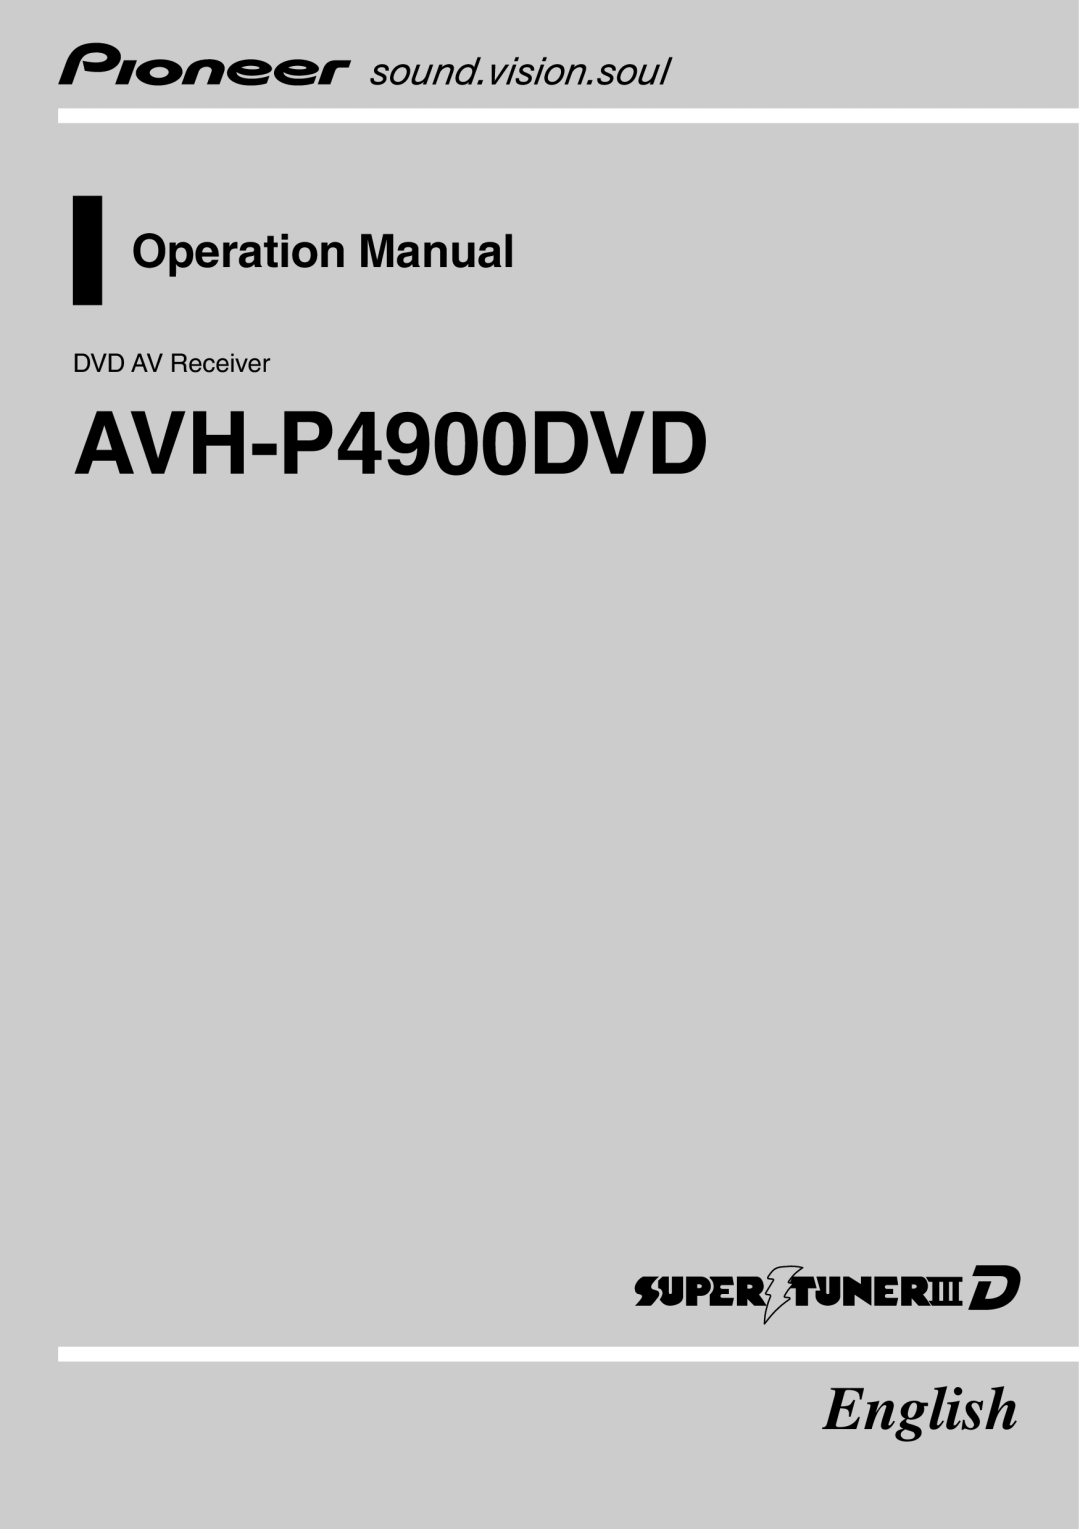 Pioneer operation manual DVD AV Receiver, AVH-P4900DVD, English, Operation Manual 